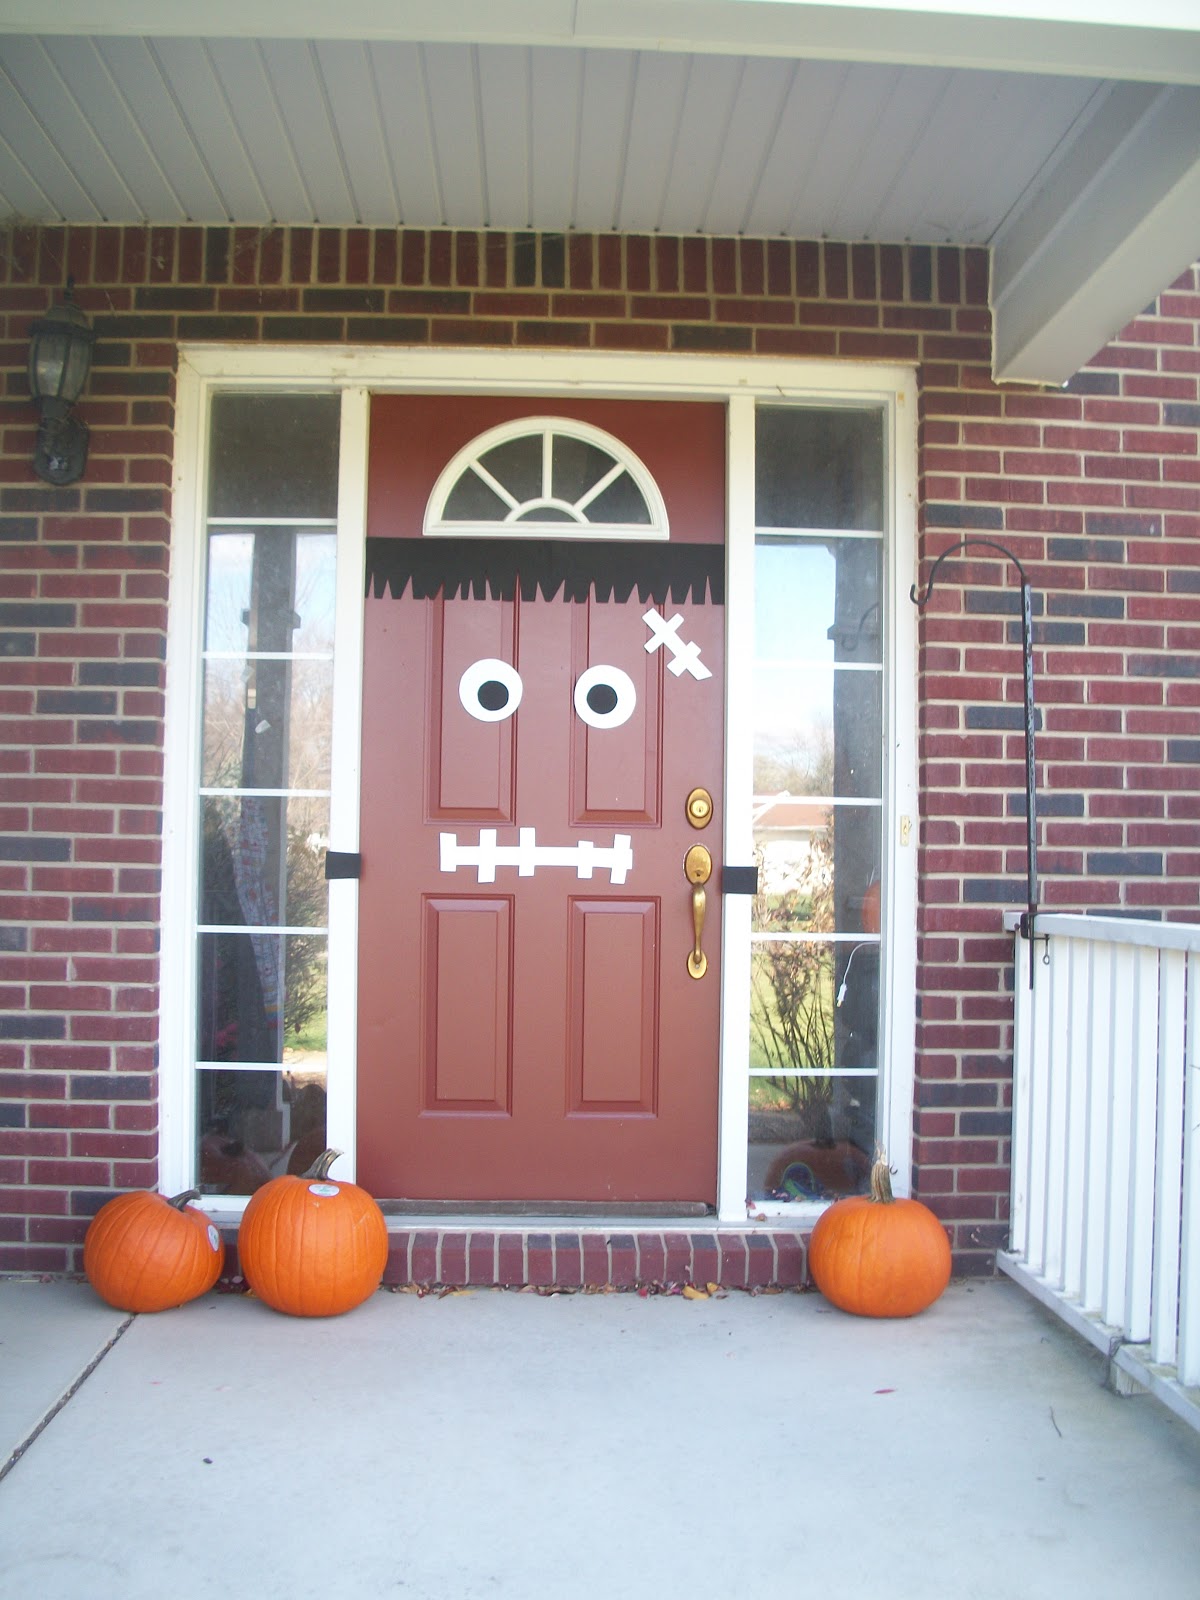 Pams Party & Practical Tips: Last Minute Decor-Door Monsters